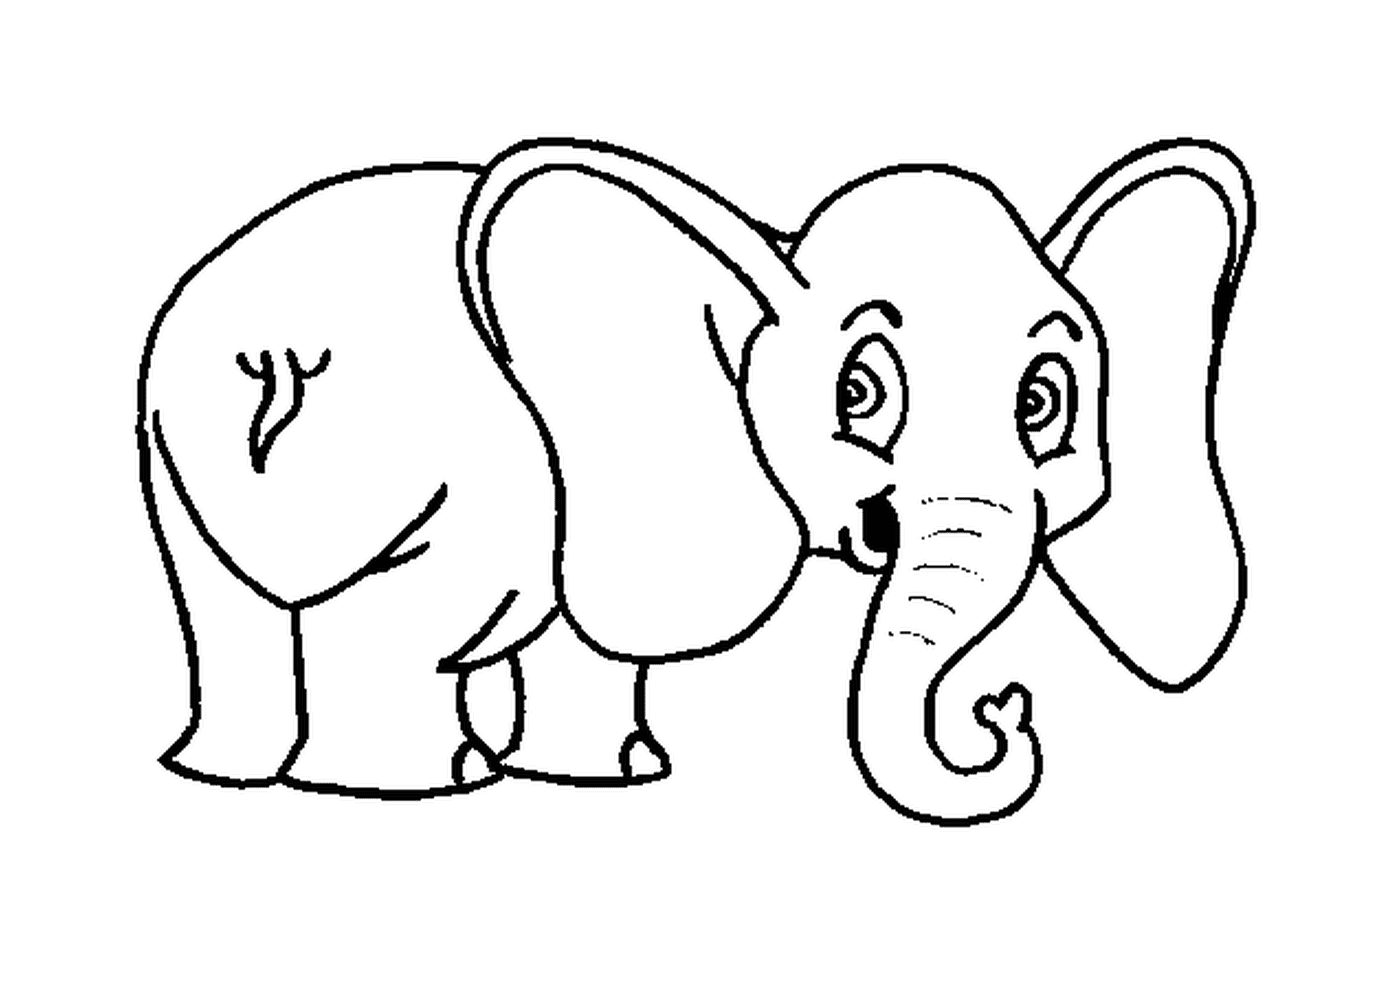  Ein Elefant mit großen Ohren gezeichnet 